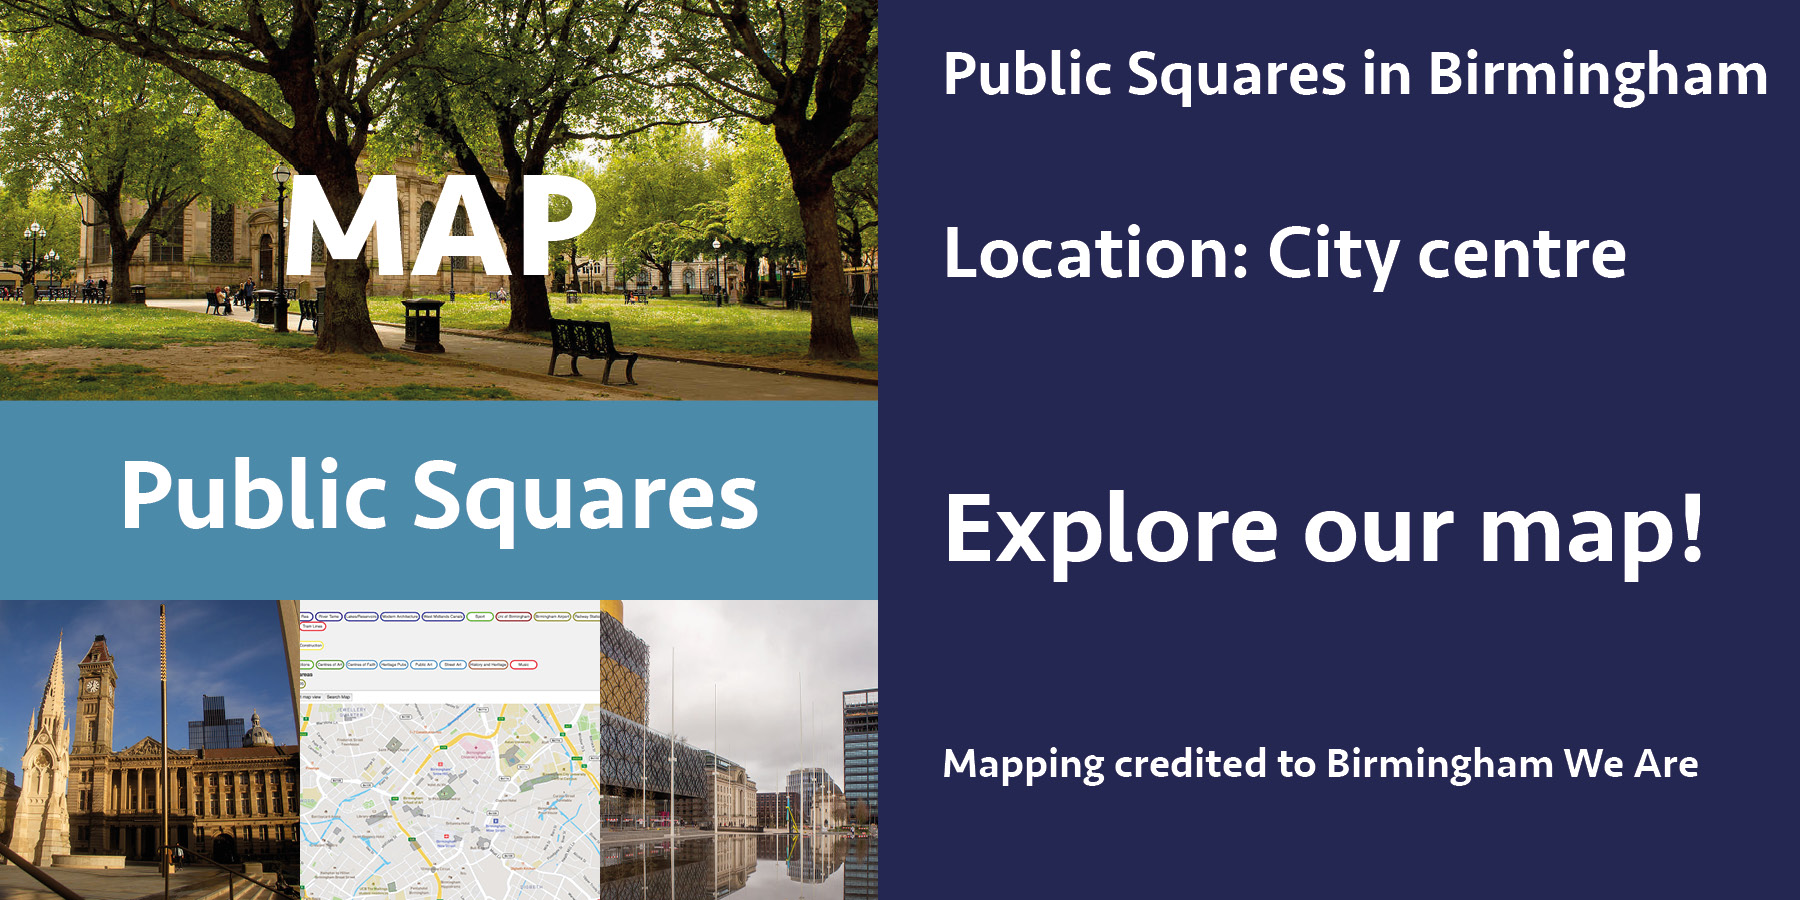 Public squares map in birmingham